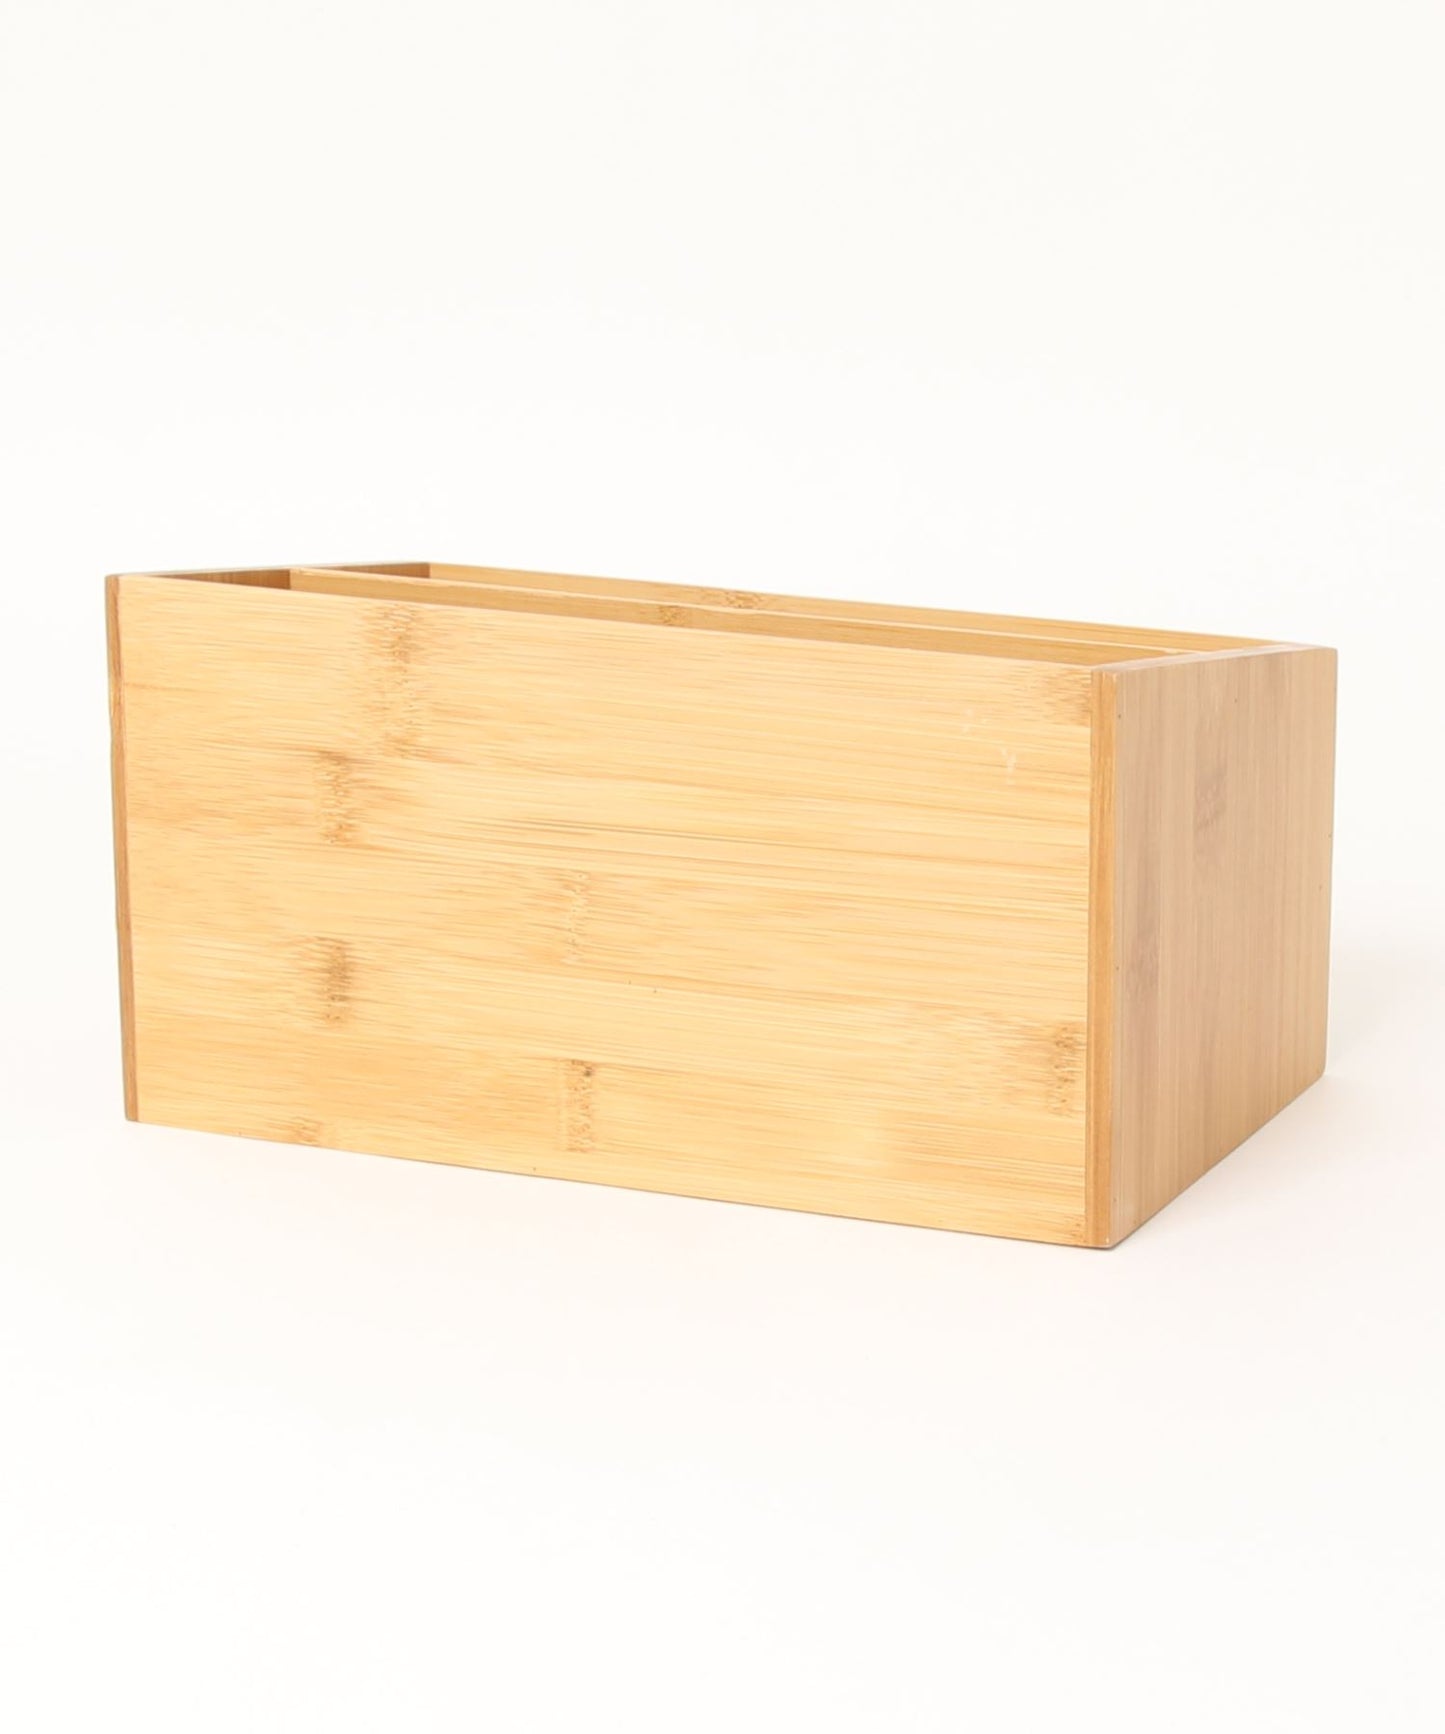 木製2段メイク/小物/筆記用具なんでも収納ボックス